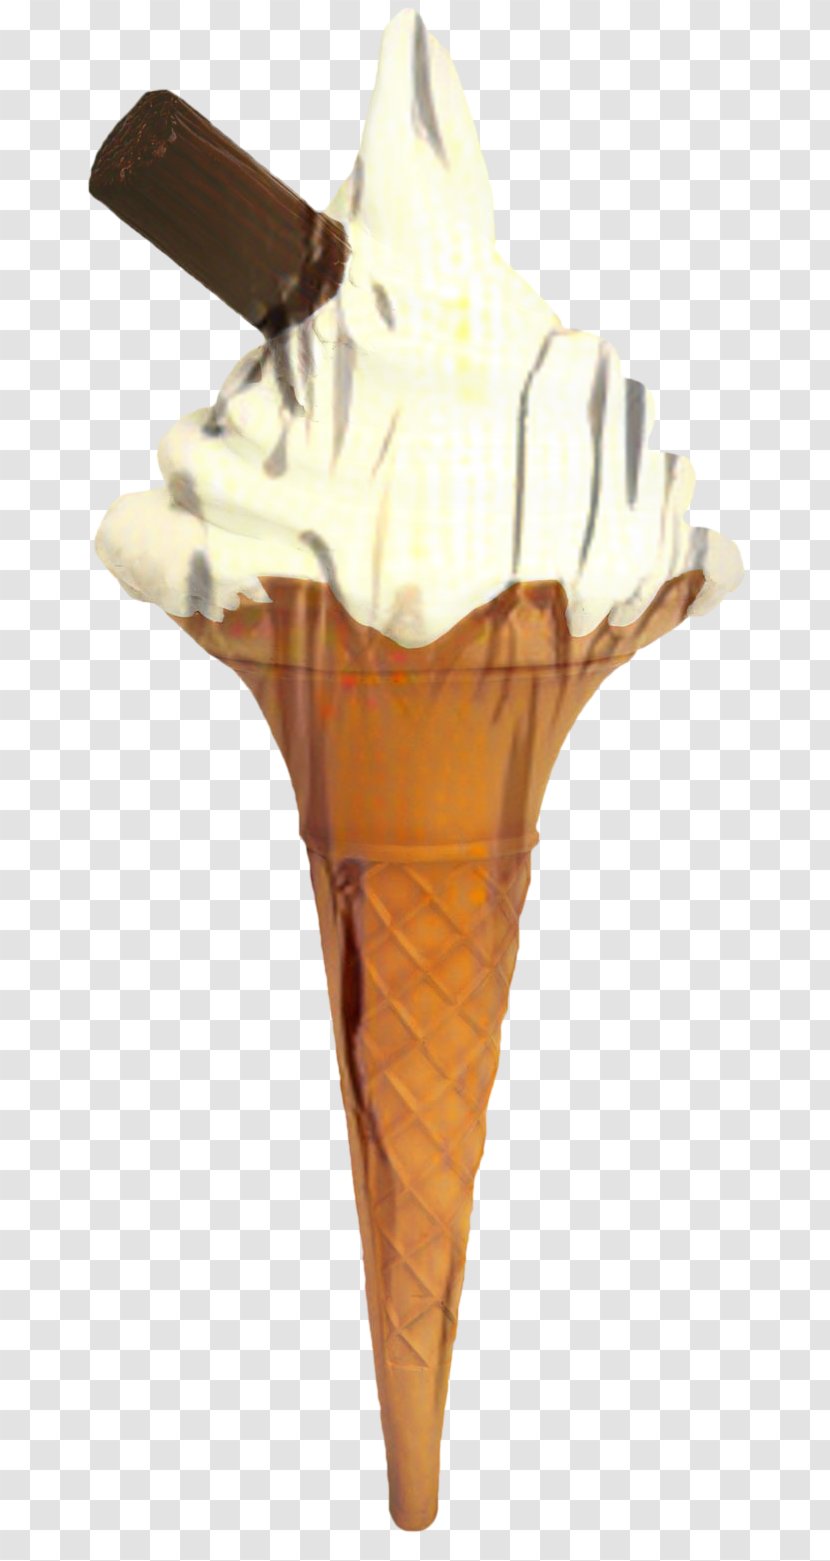 Ice Cream Cone Background - Chocolate - Cuisine Transparent PNG